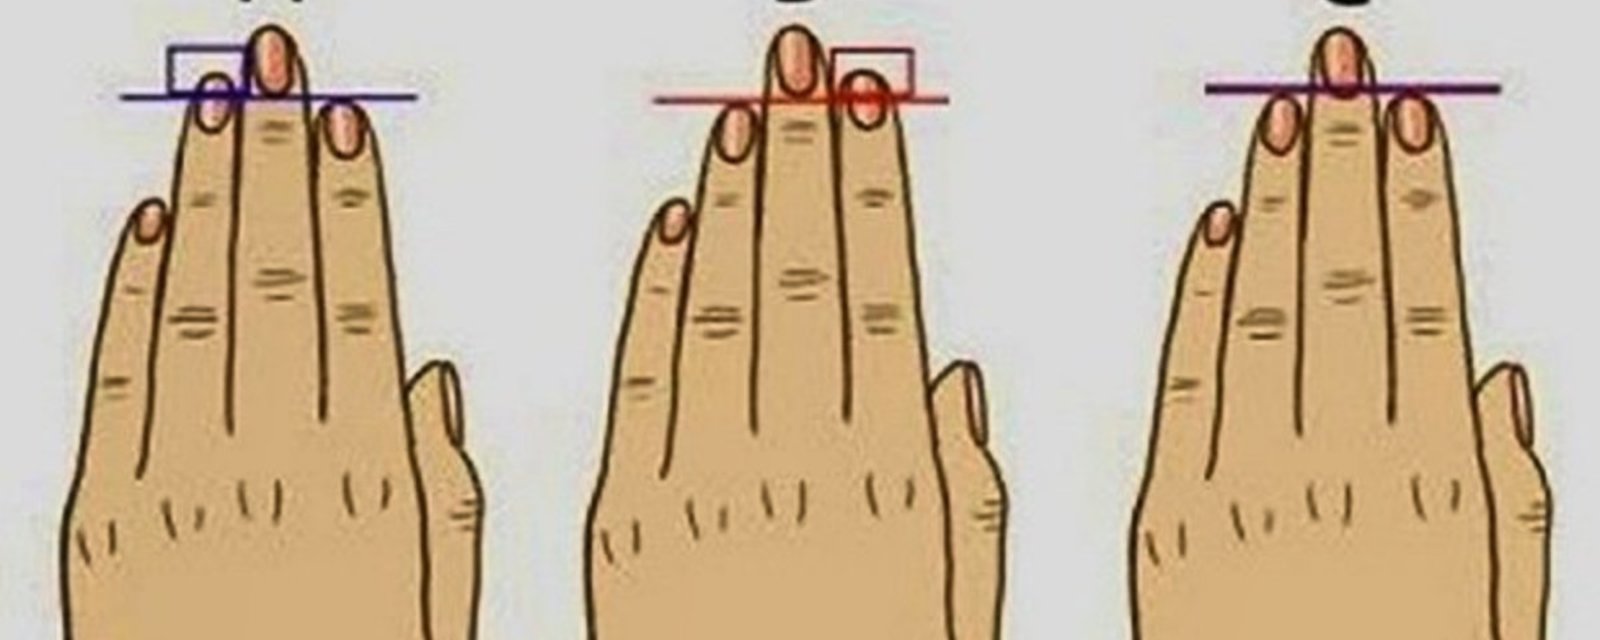 Voici ce que la longueur des doigts des hommes révèle... sur leur pénis!